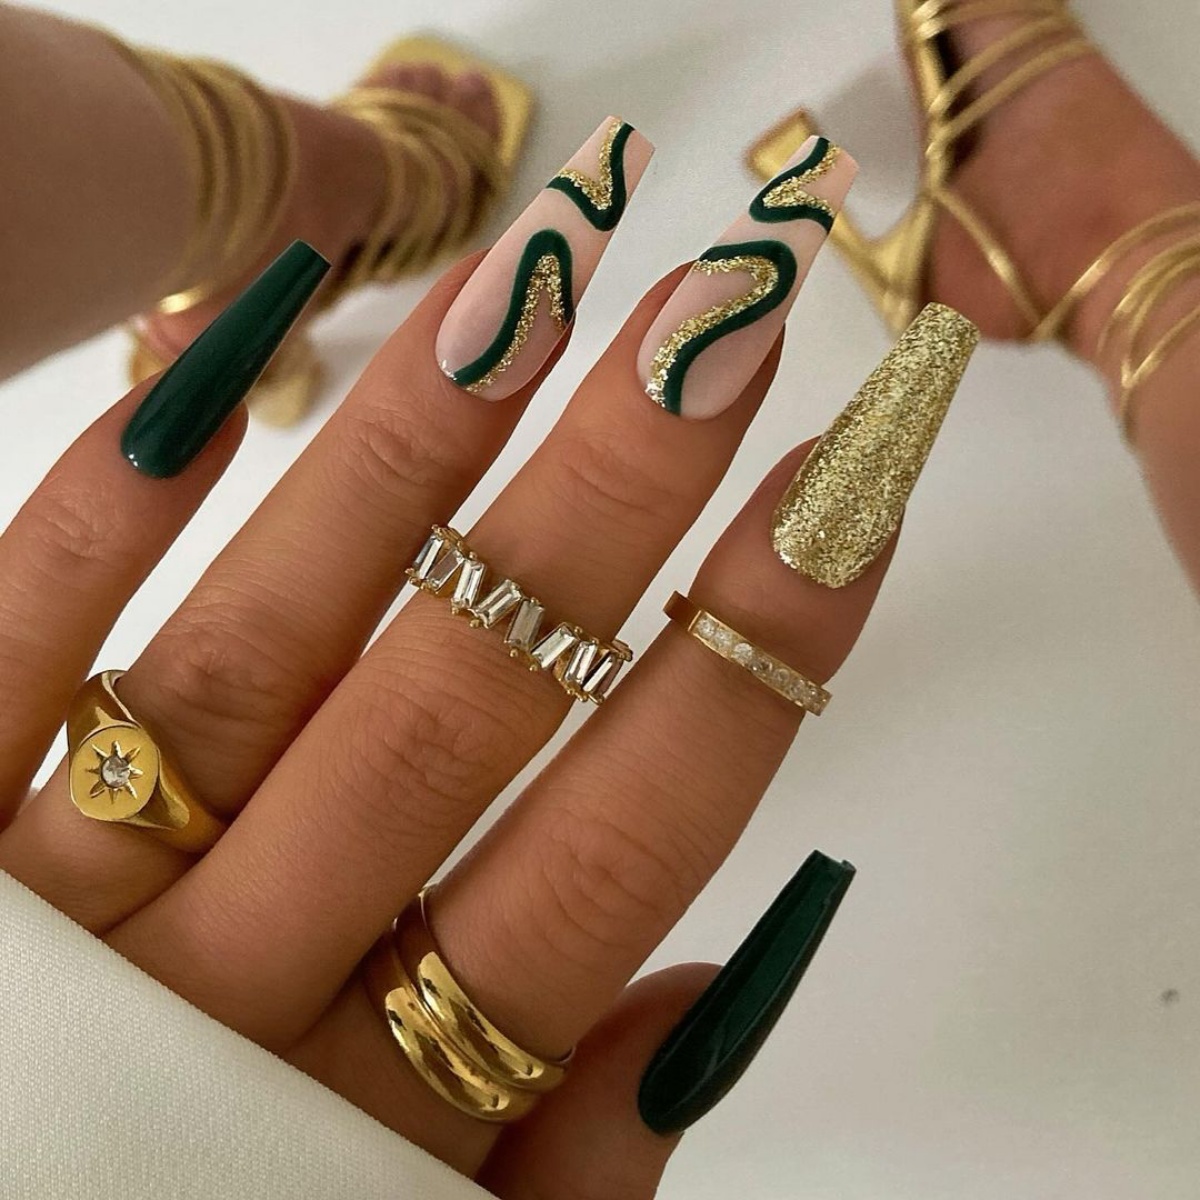 nails art unghie gel con smalto oro glitter